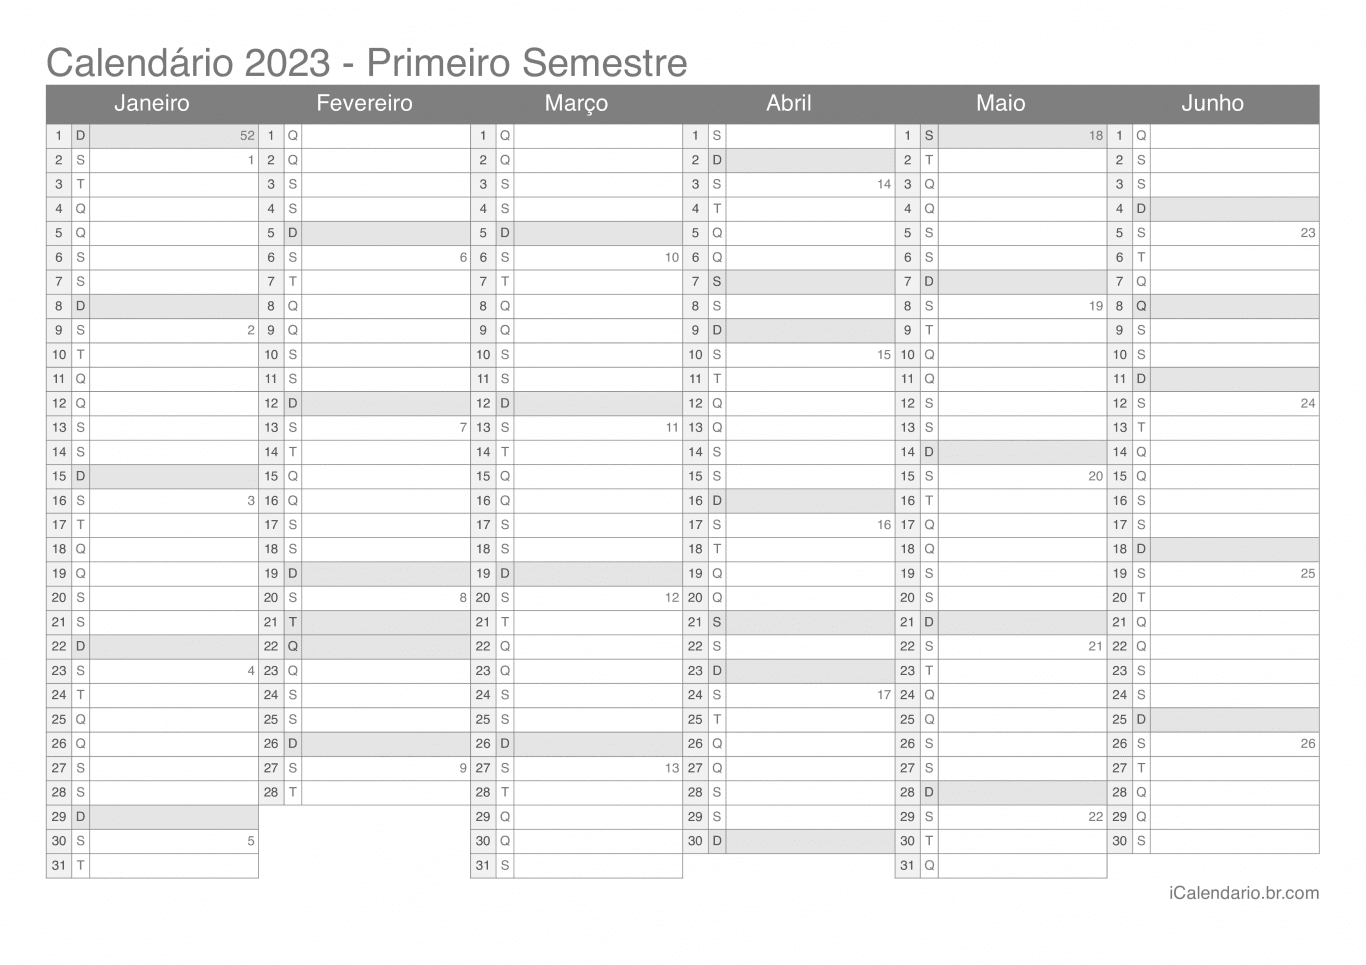 Calendário por semestre com números da semana 2023